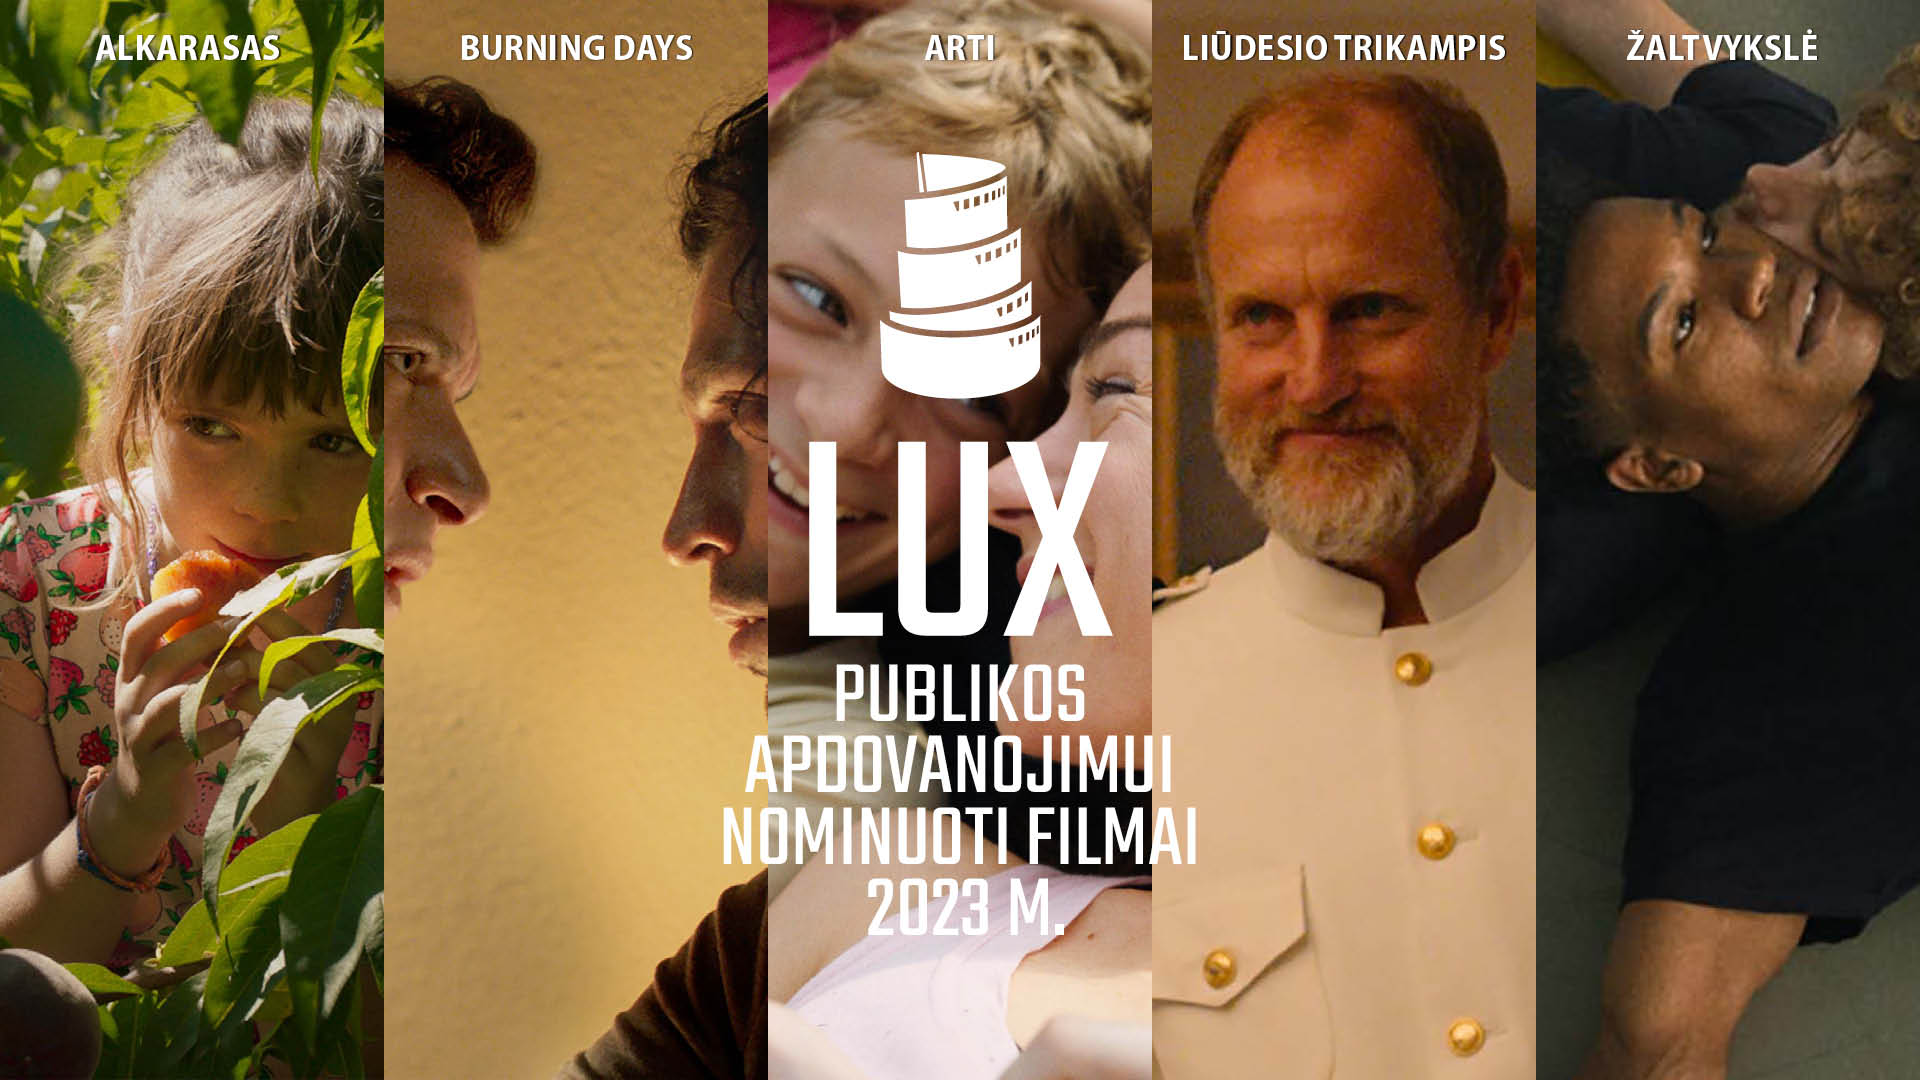 Penki LUX publikos apdovanojimui nominuoti filmai